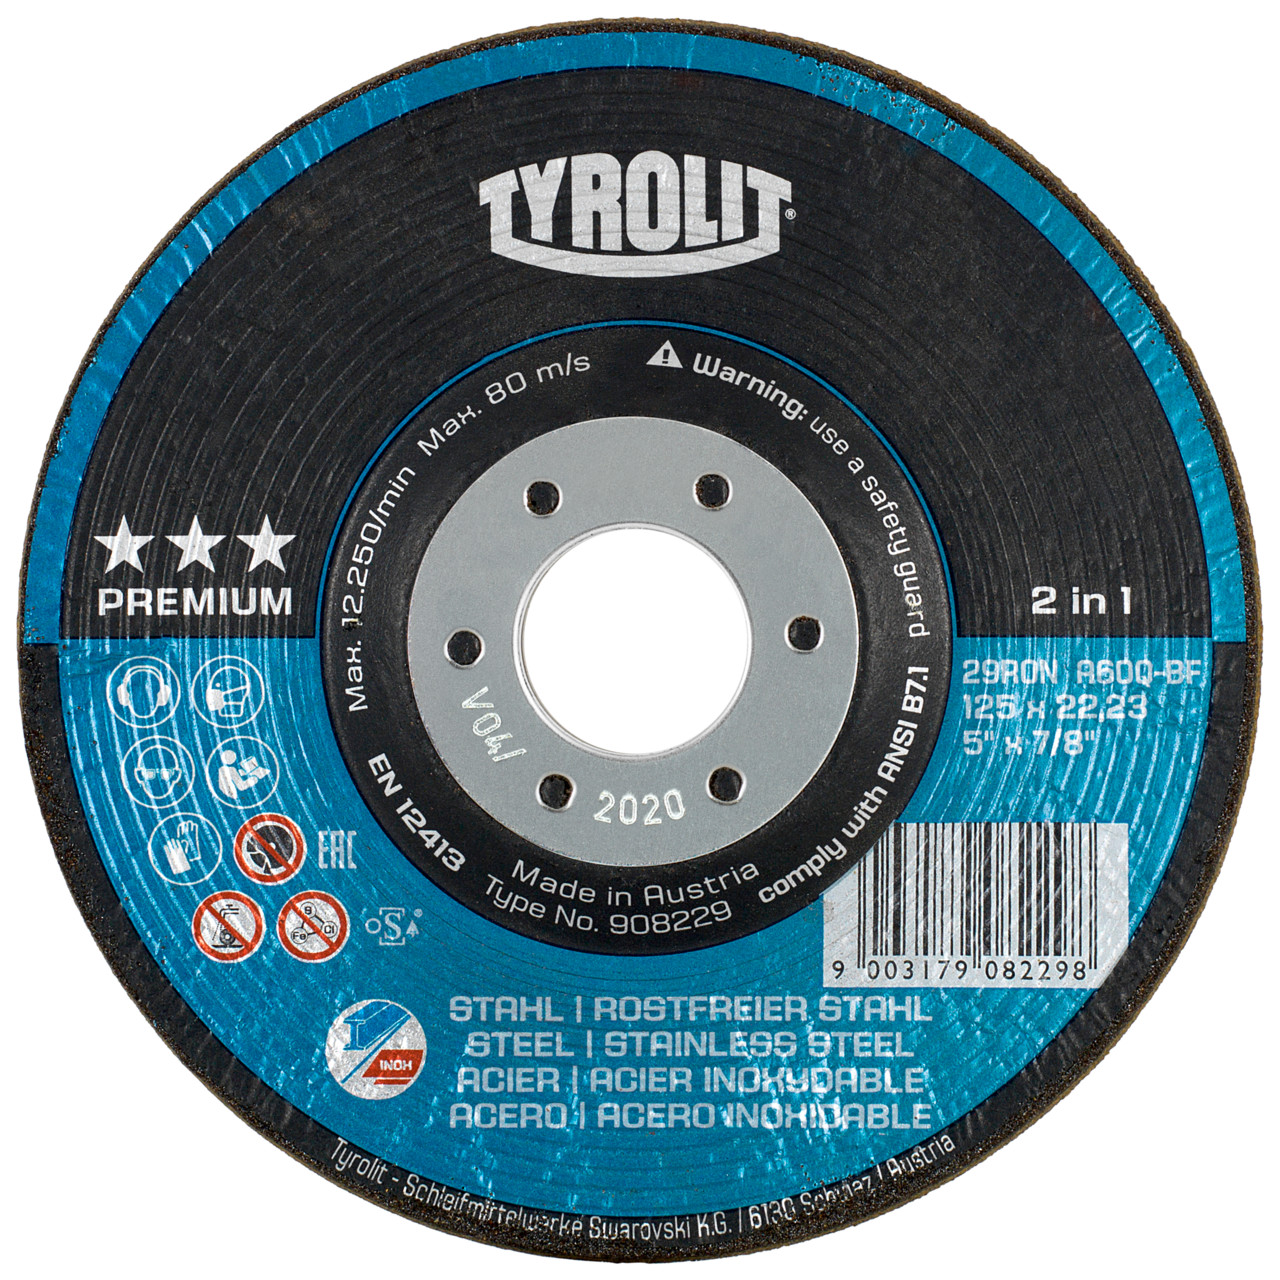 TYROLIT RONDELLER DxH 125x22,23 2in1 für Stahl und Edelstahl, Form: 29RON (Rondeller®), Art. 57005